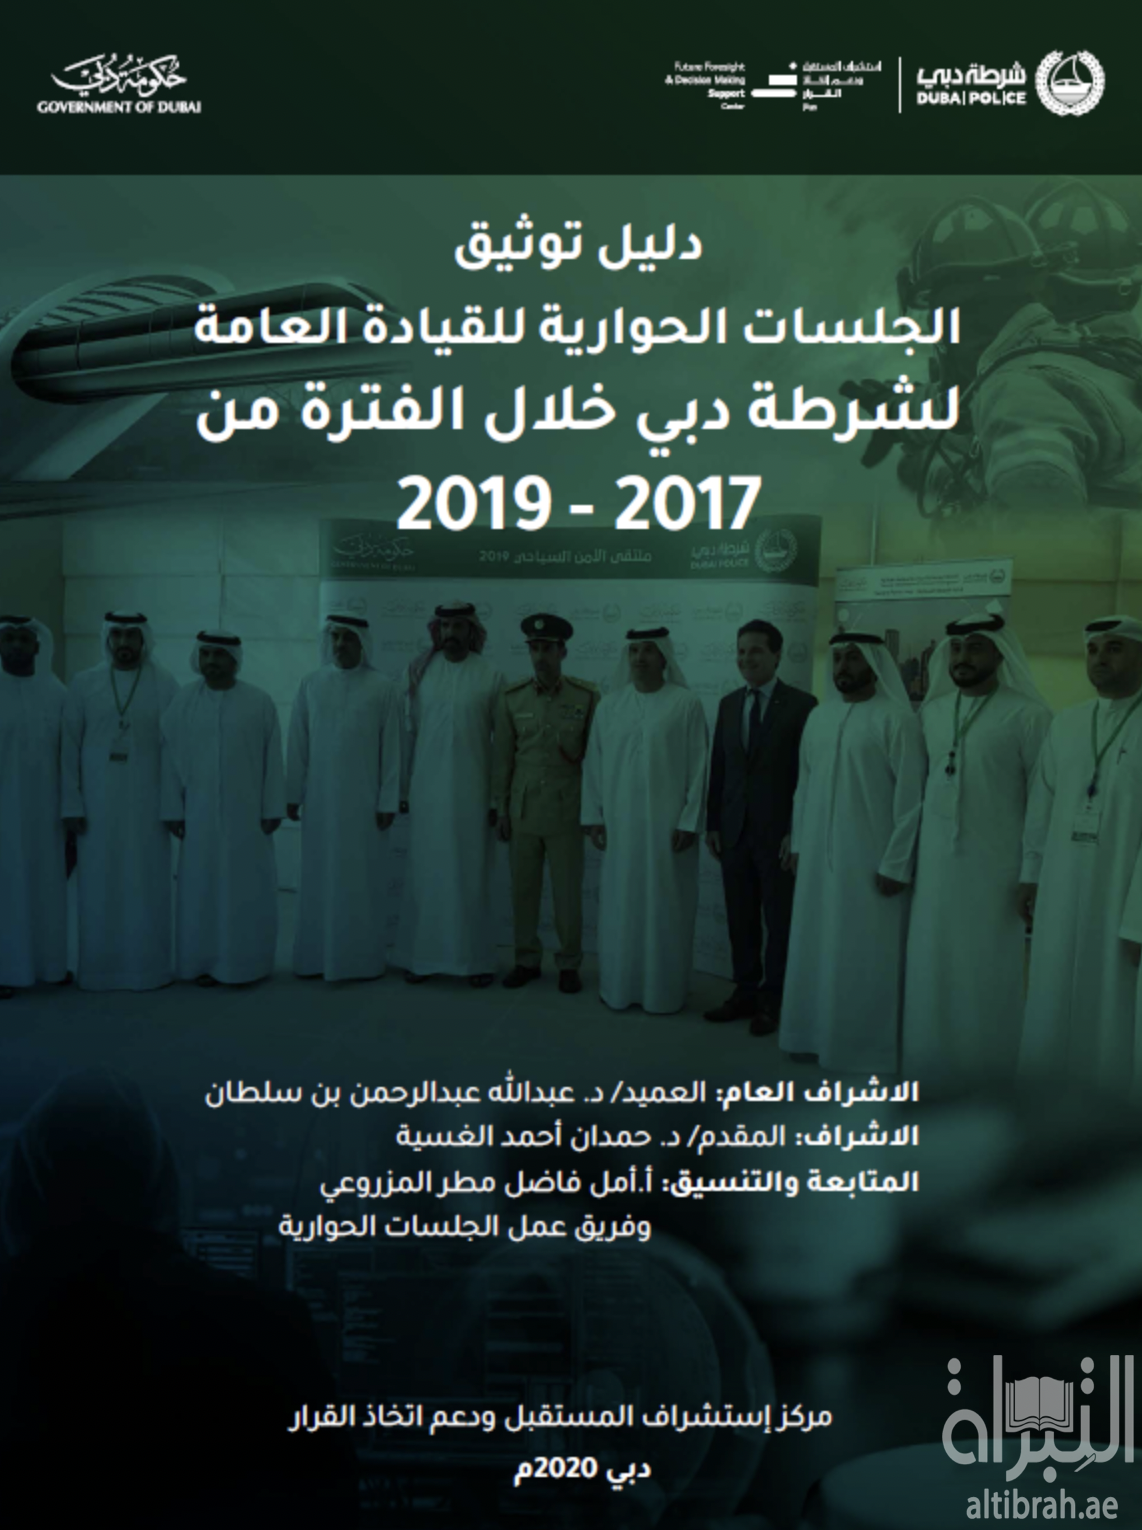 دليل توثيق الجلسات الحوارية للقيادة العامة لشرطة دبي خلال الفترة من 2017 - 2019